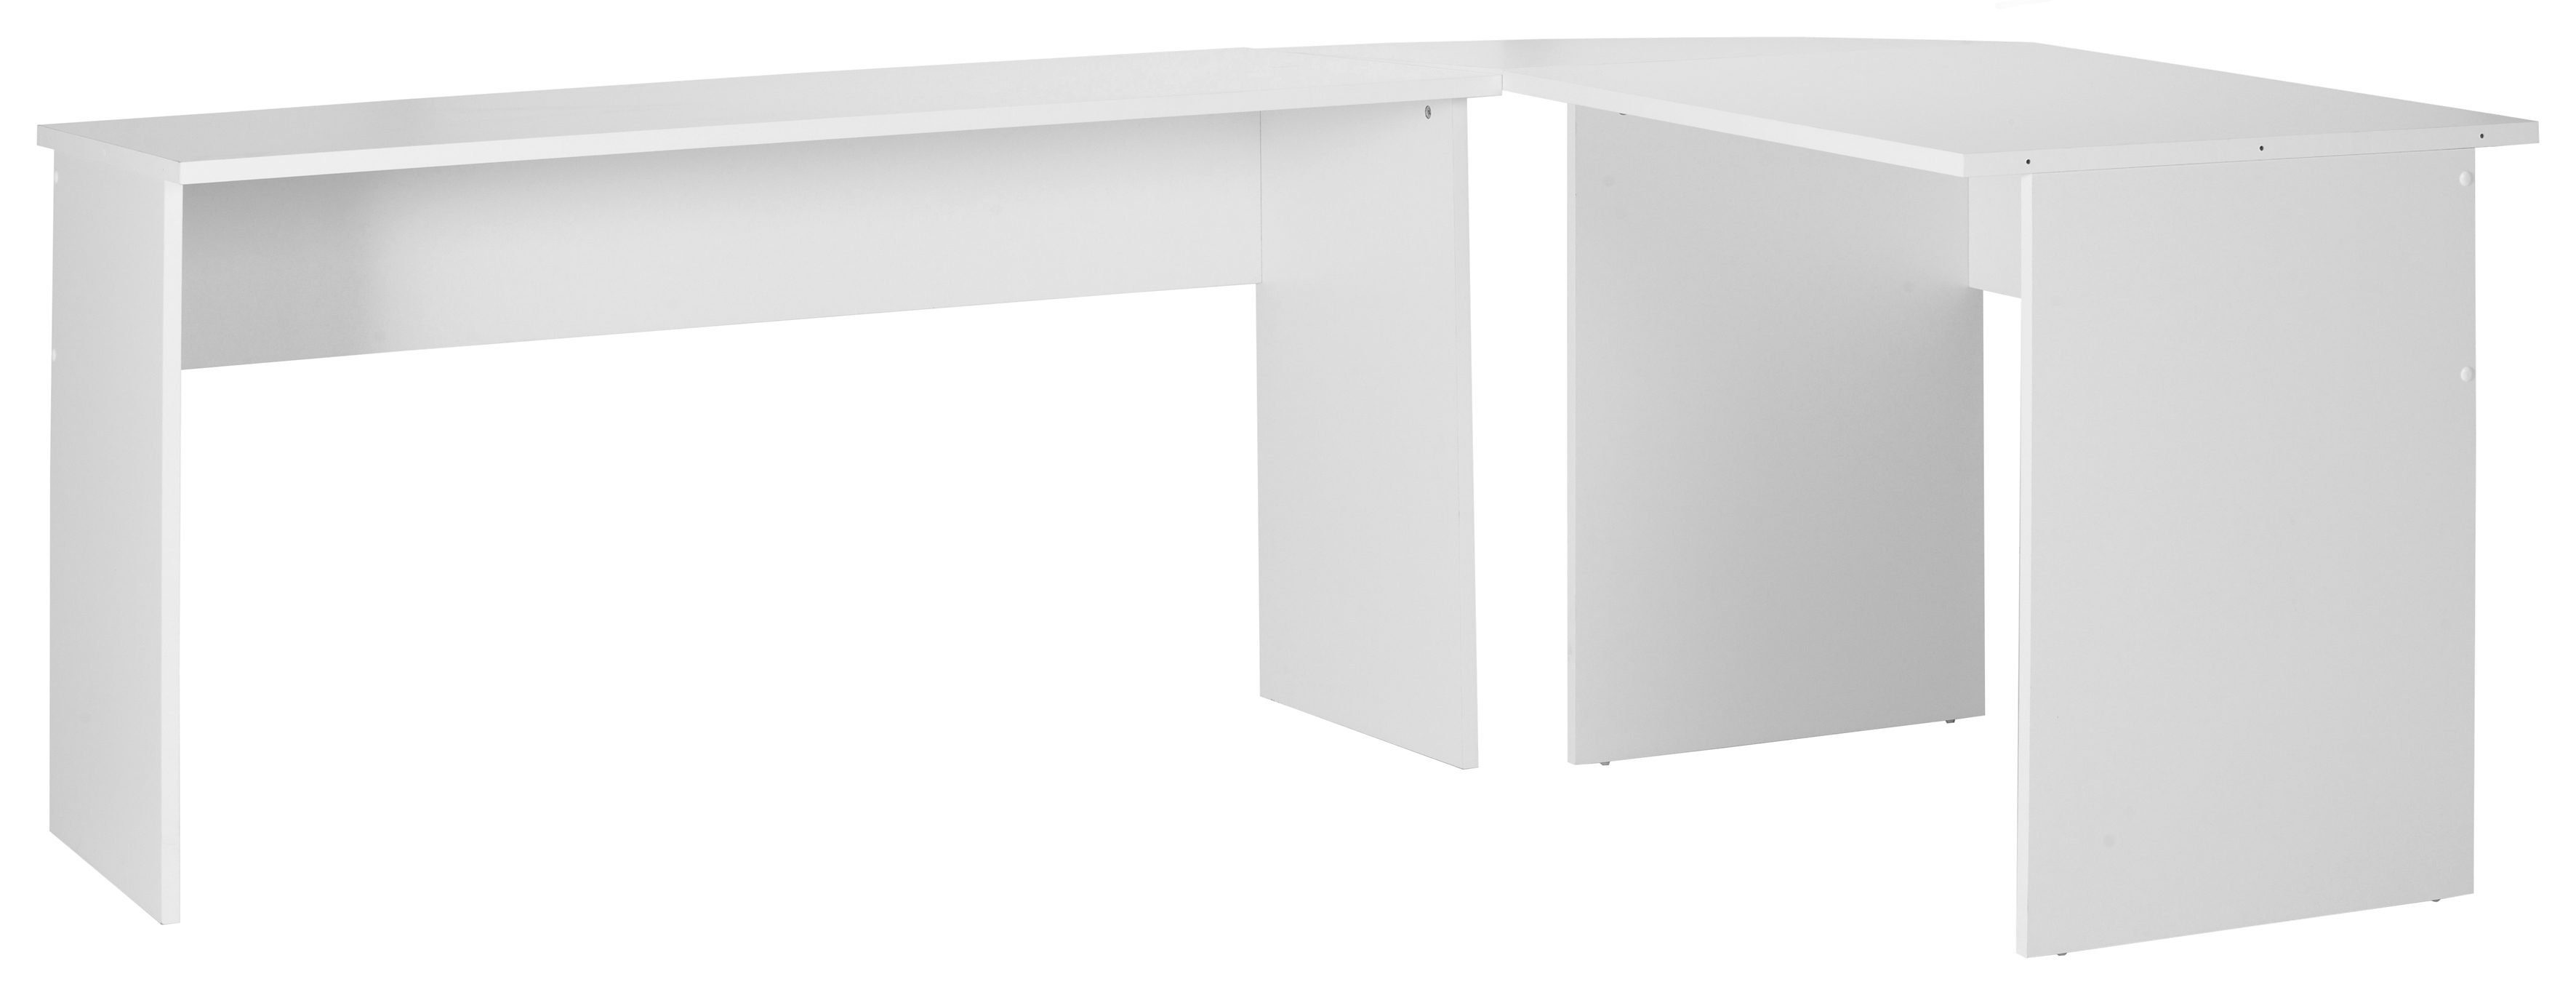 Winkel-Schreibtisch, Germany, moderner in FMD Eckschreibtisch, weiß Made cm 205/155x75,4x65,0